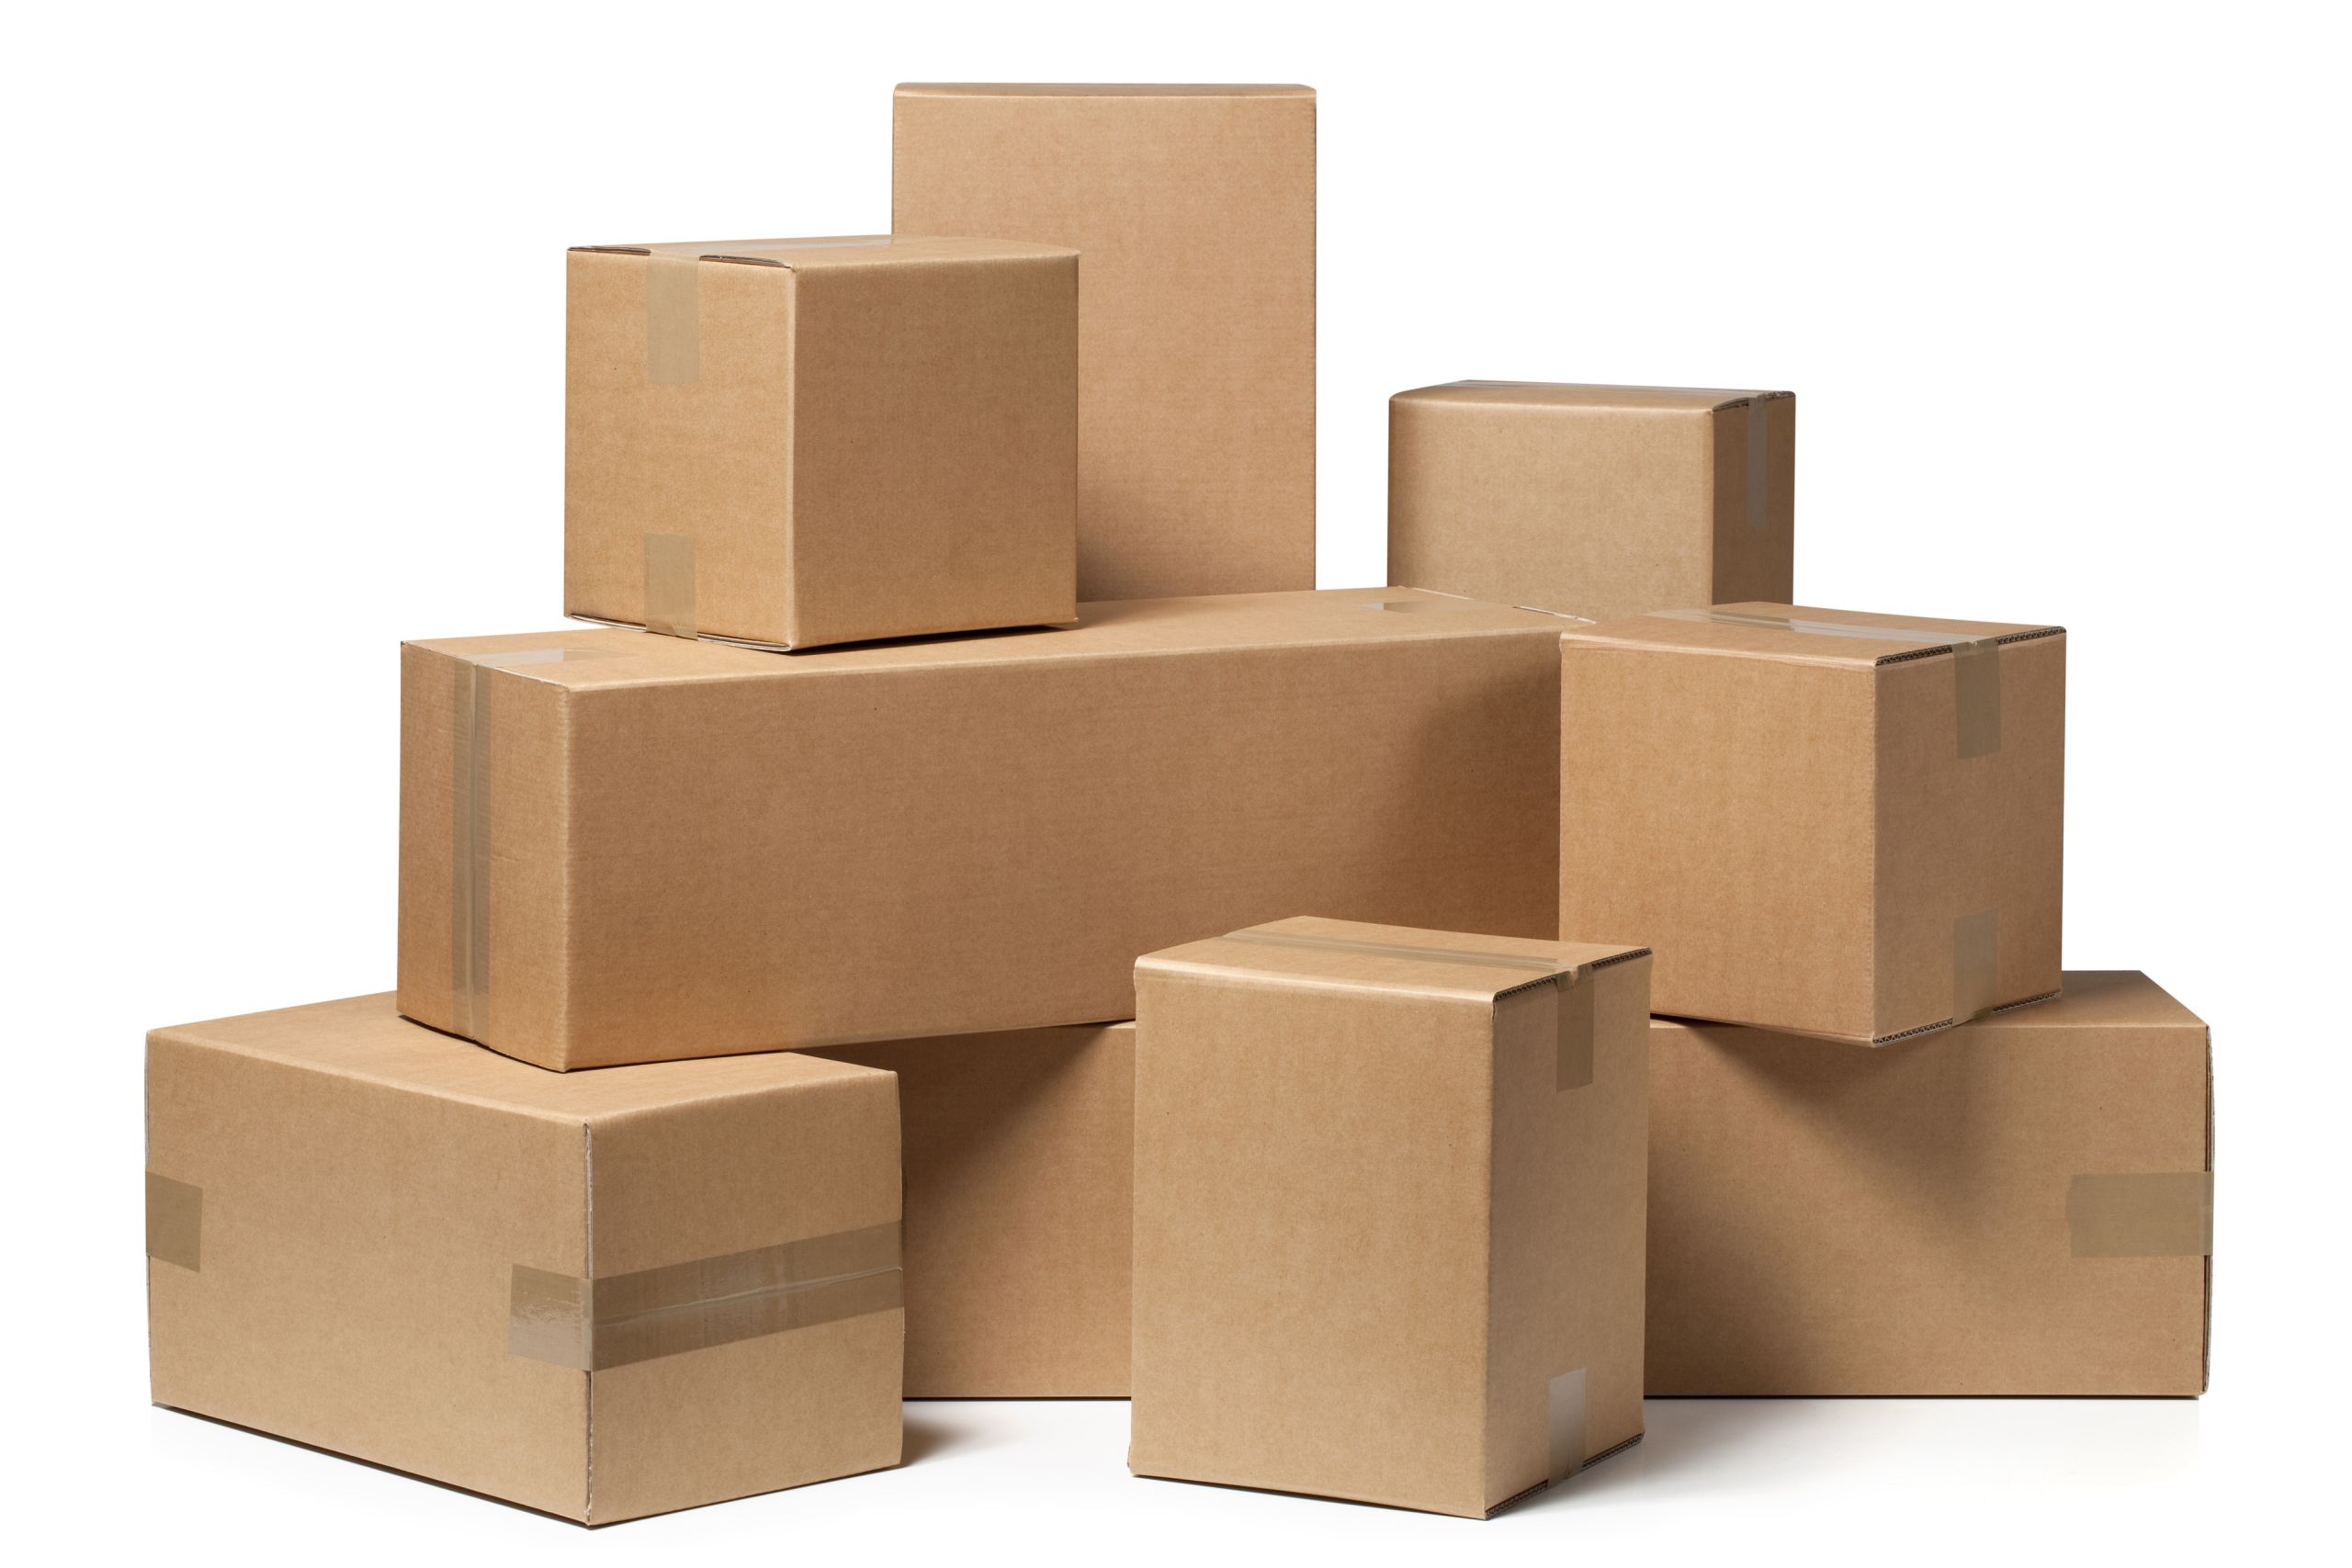 Caixas e embalagens para mudança: como escolher e organizar?